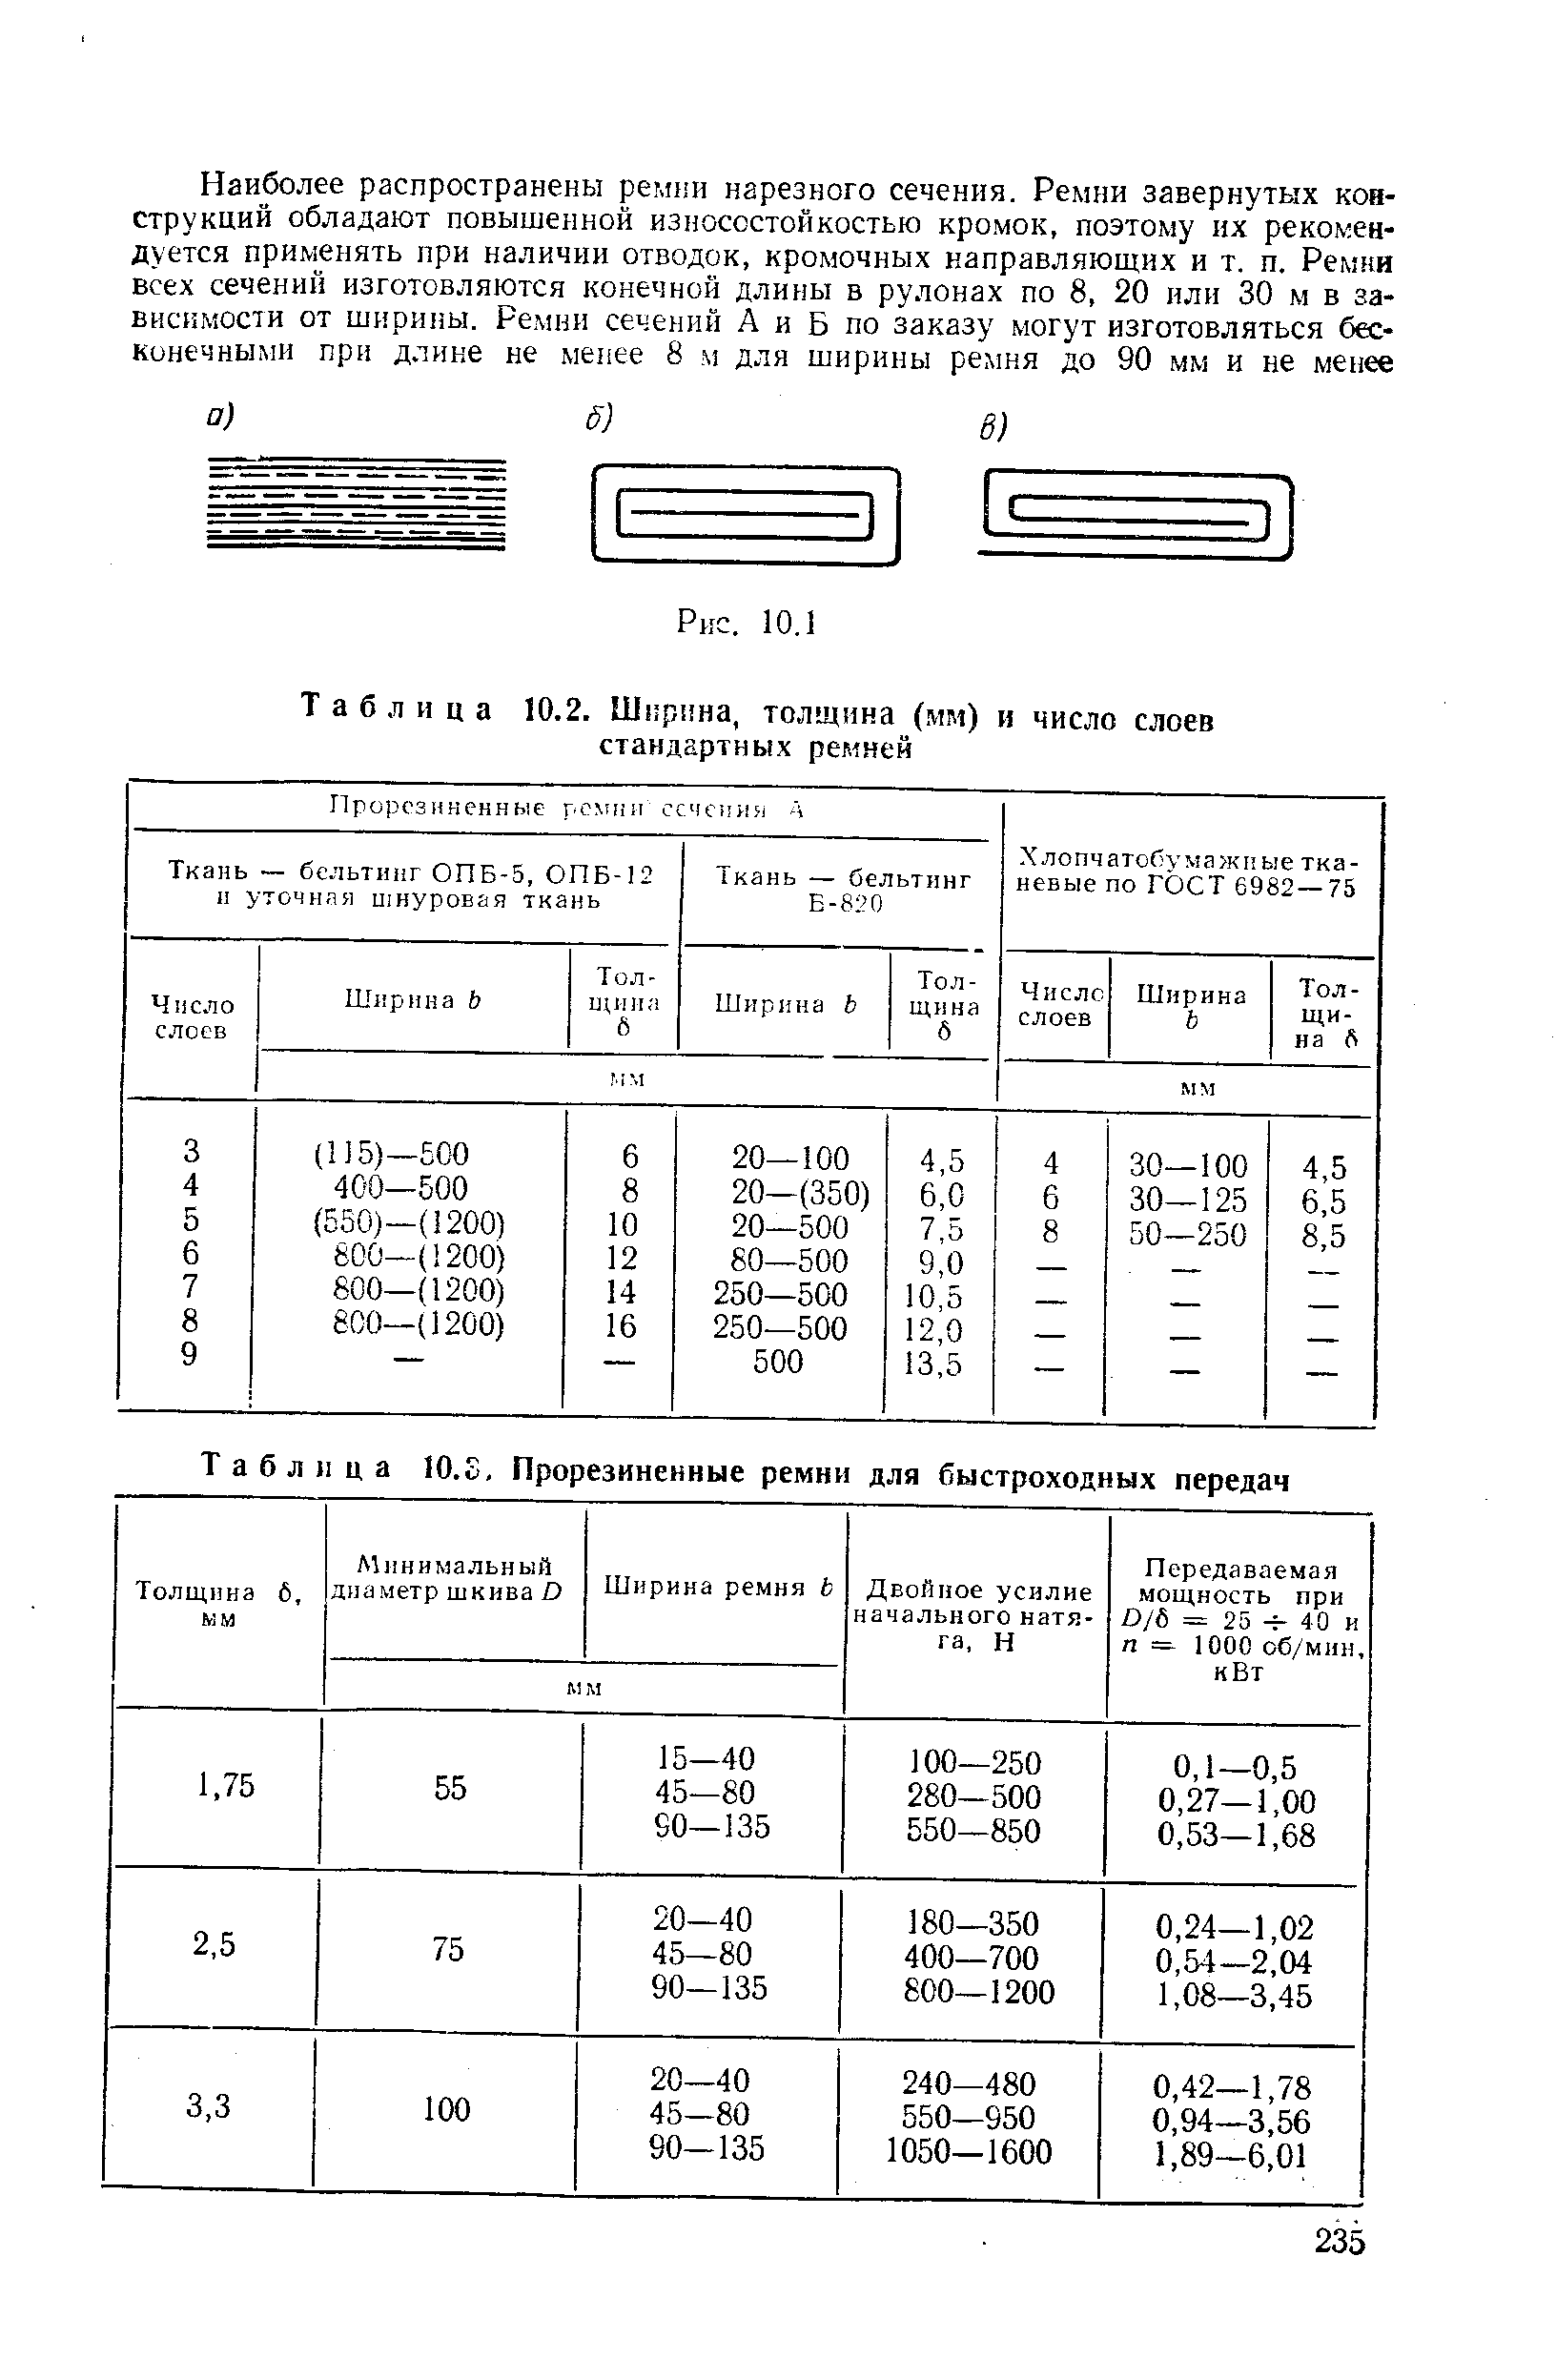 Таблица 10.2. Ширина, толщина (мм) и число слоев стандартных ремней
